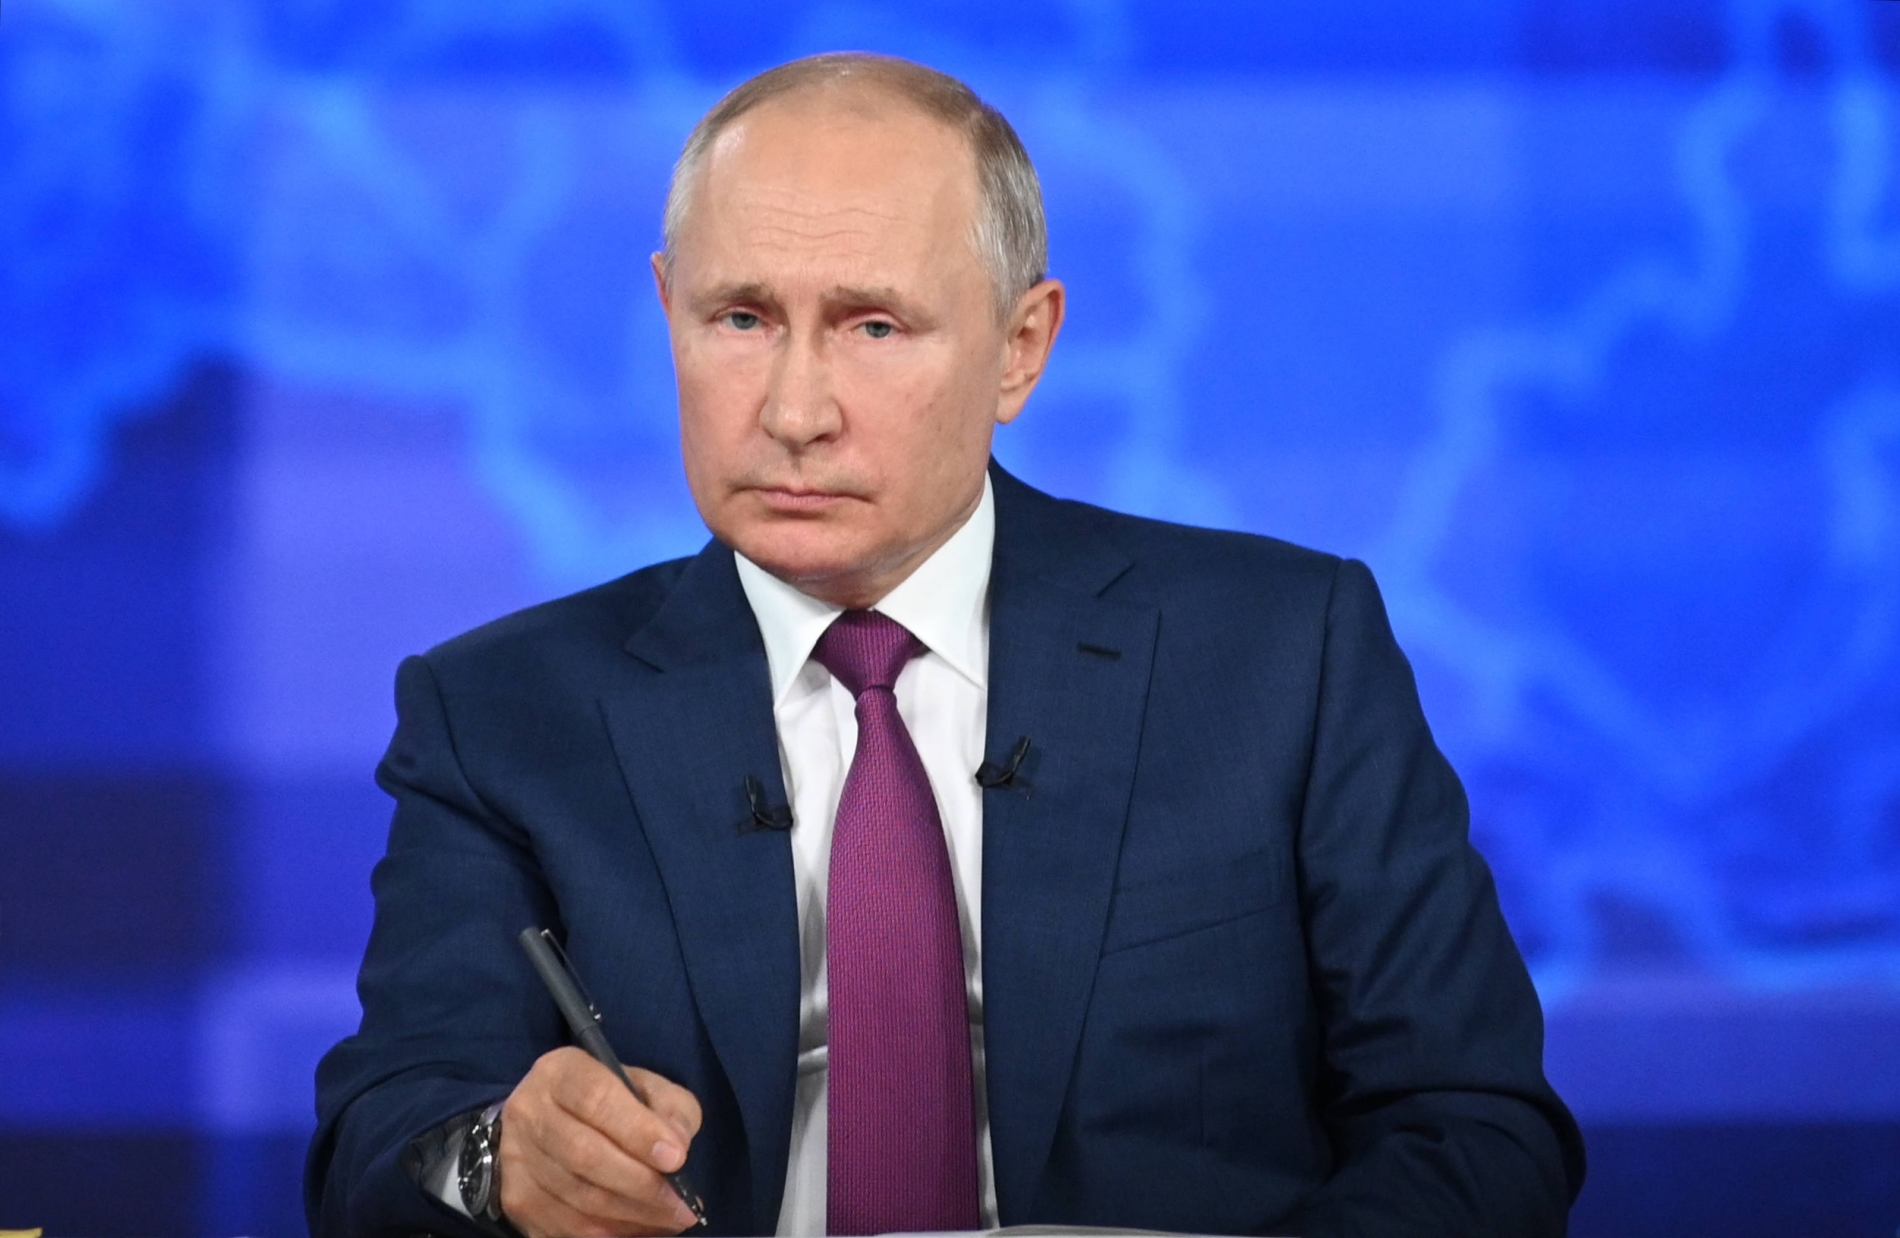 Сервисы по приему вопросов для Прямой линии с Путиным заработают до конца недели